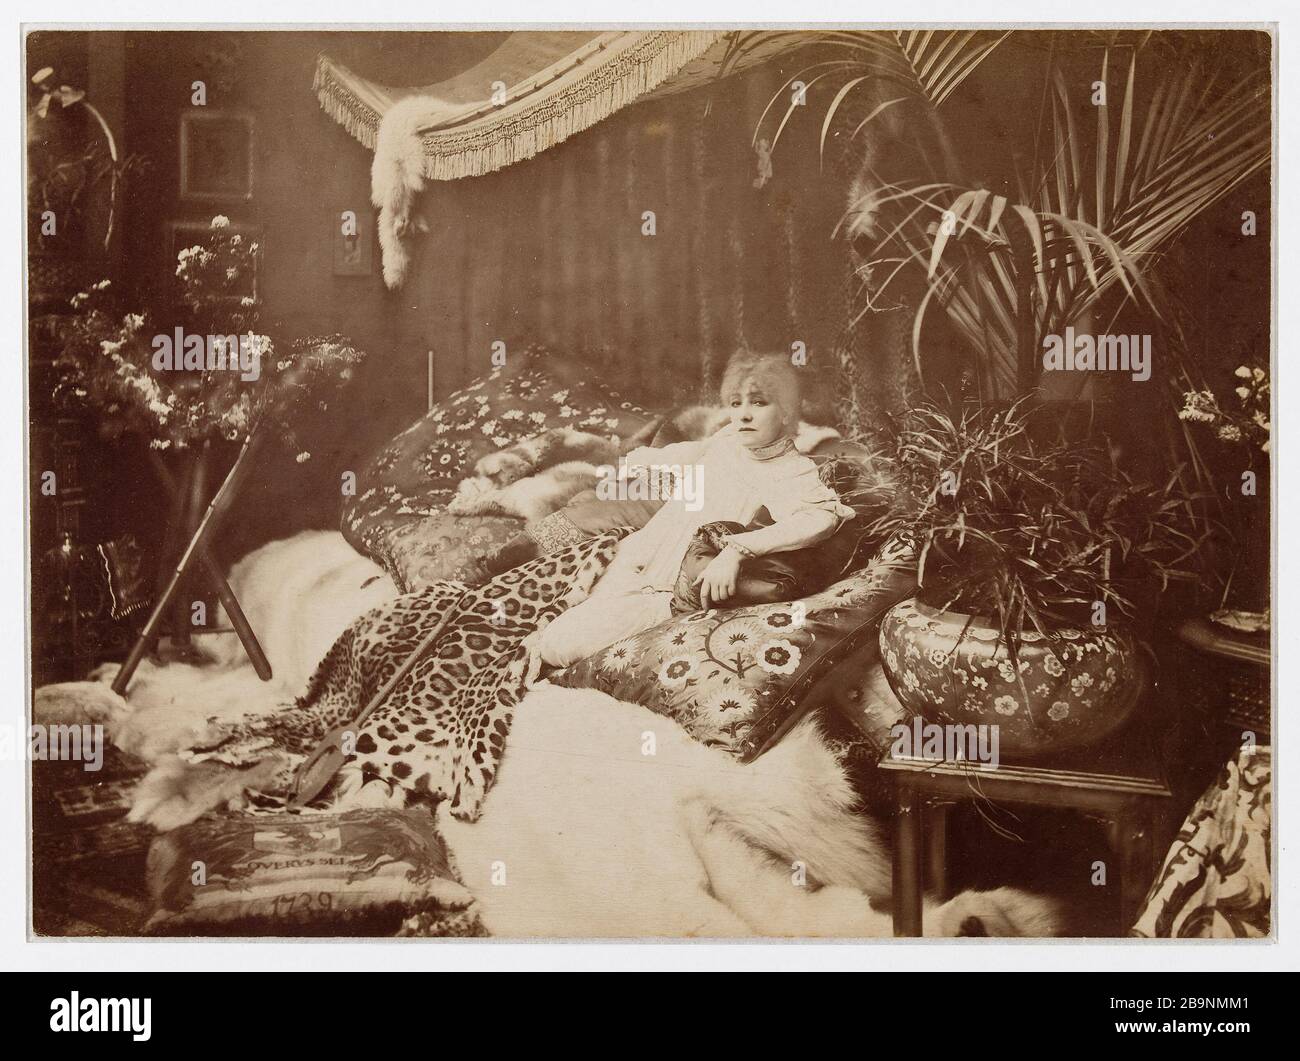 SARAH BERNHARDT TO HER Sarah Bernhardt (1844-1923), actrice française, chez elle. Photographie de Nadar (1820-1910). Musée des Beaux-Arts de la Ville de Paris, Petit Palais. Stock Photo